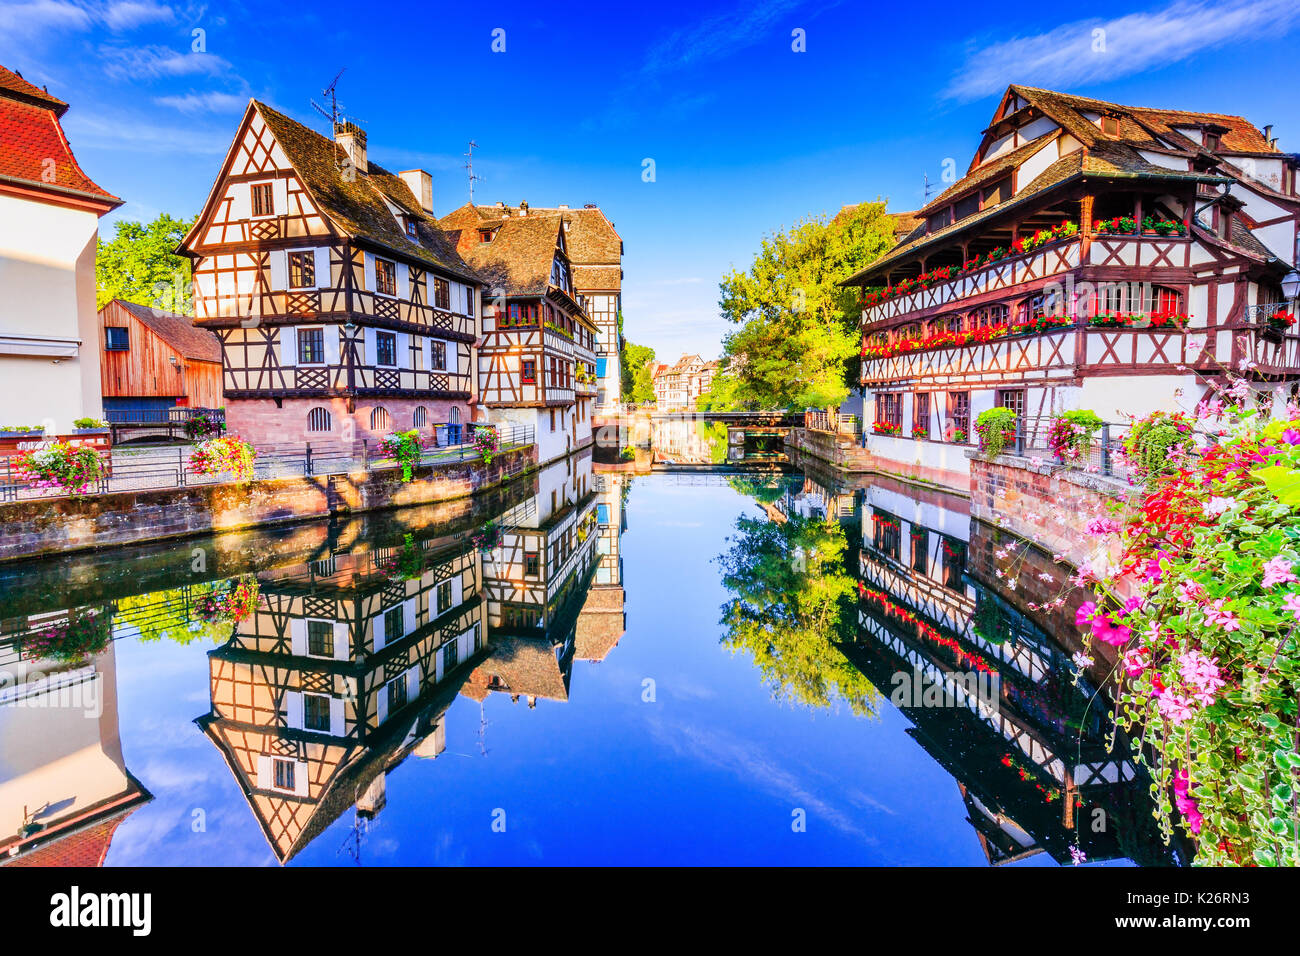 Estrasburgo, Alsacia, Francia. Casas con entramados de madera tradicional de la Petite France. Foto de stock